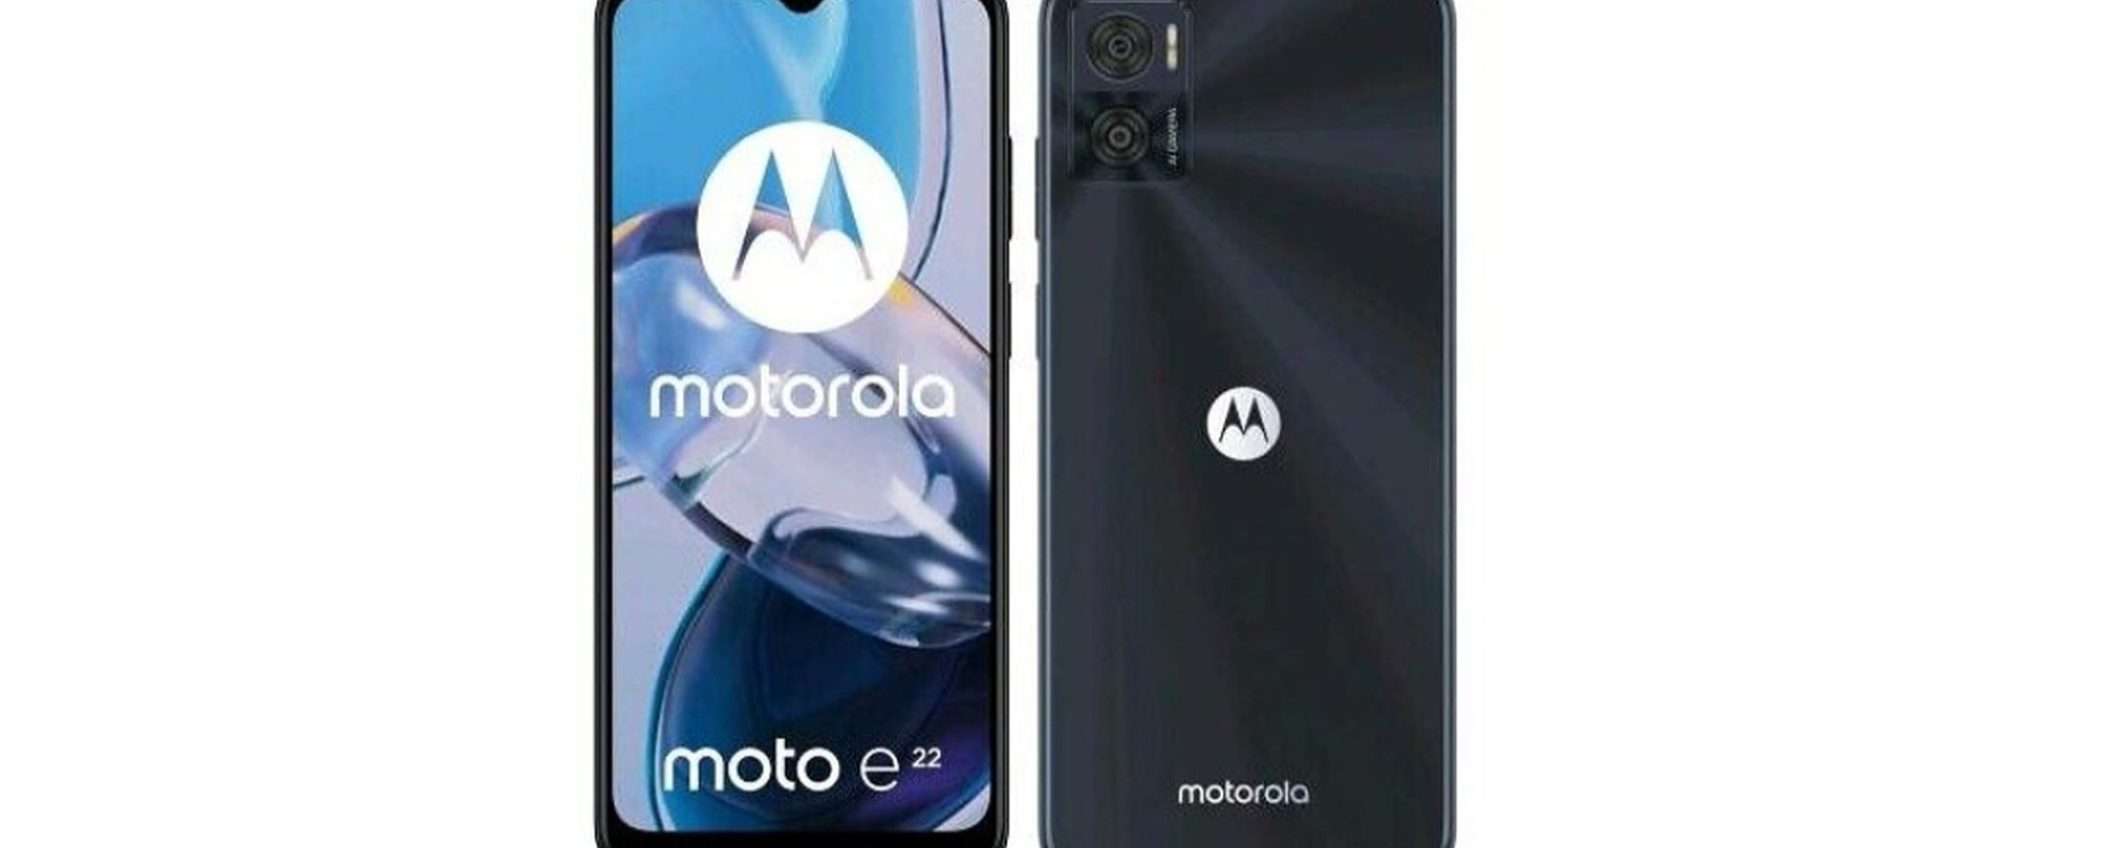 Motorola moto E22 a MENO DI 100 EURO su eBay, sconto del 43%!